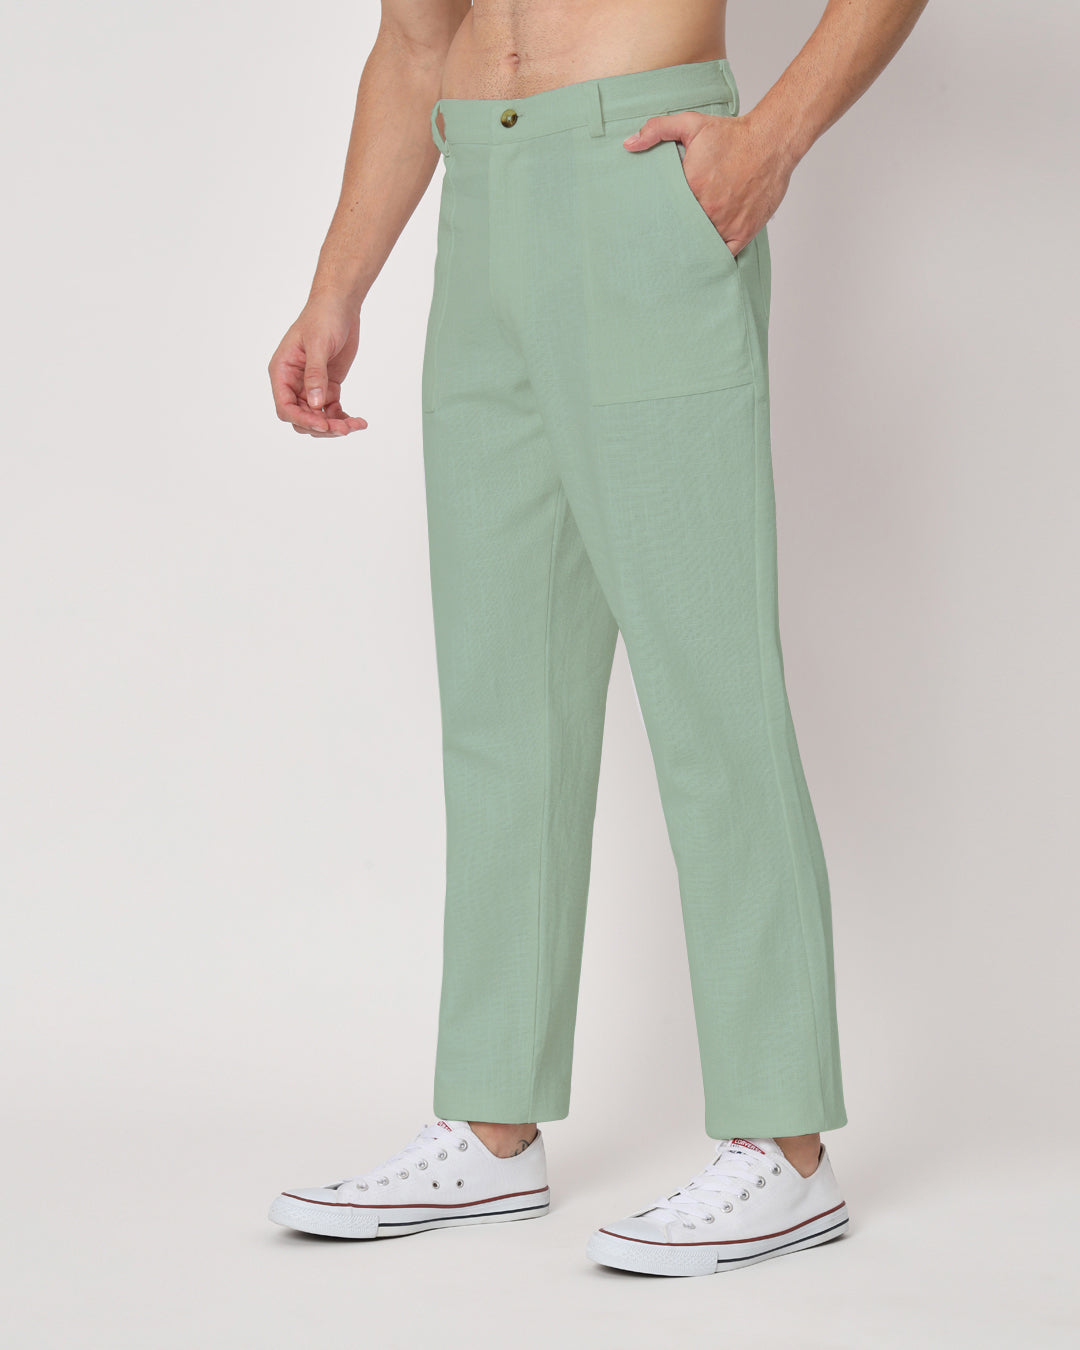 Combo : Comfy Ease Spring Green & Black Men's Pants - Set of 2